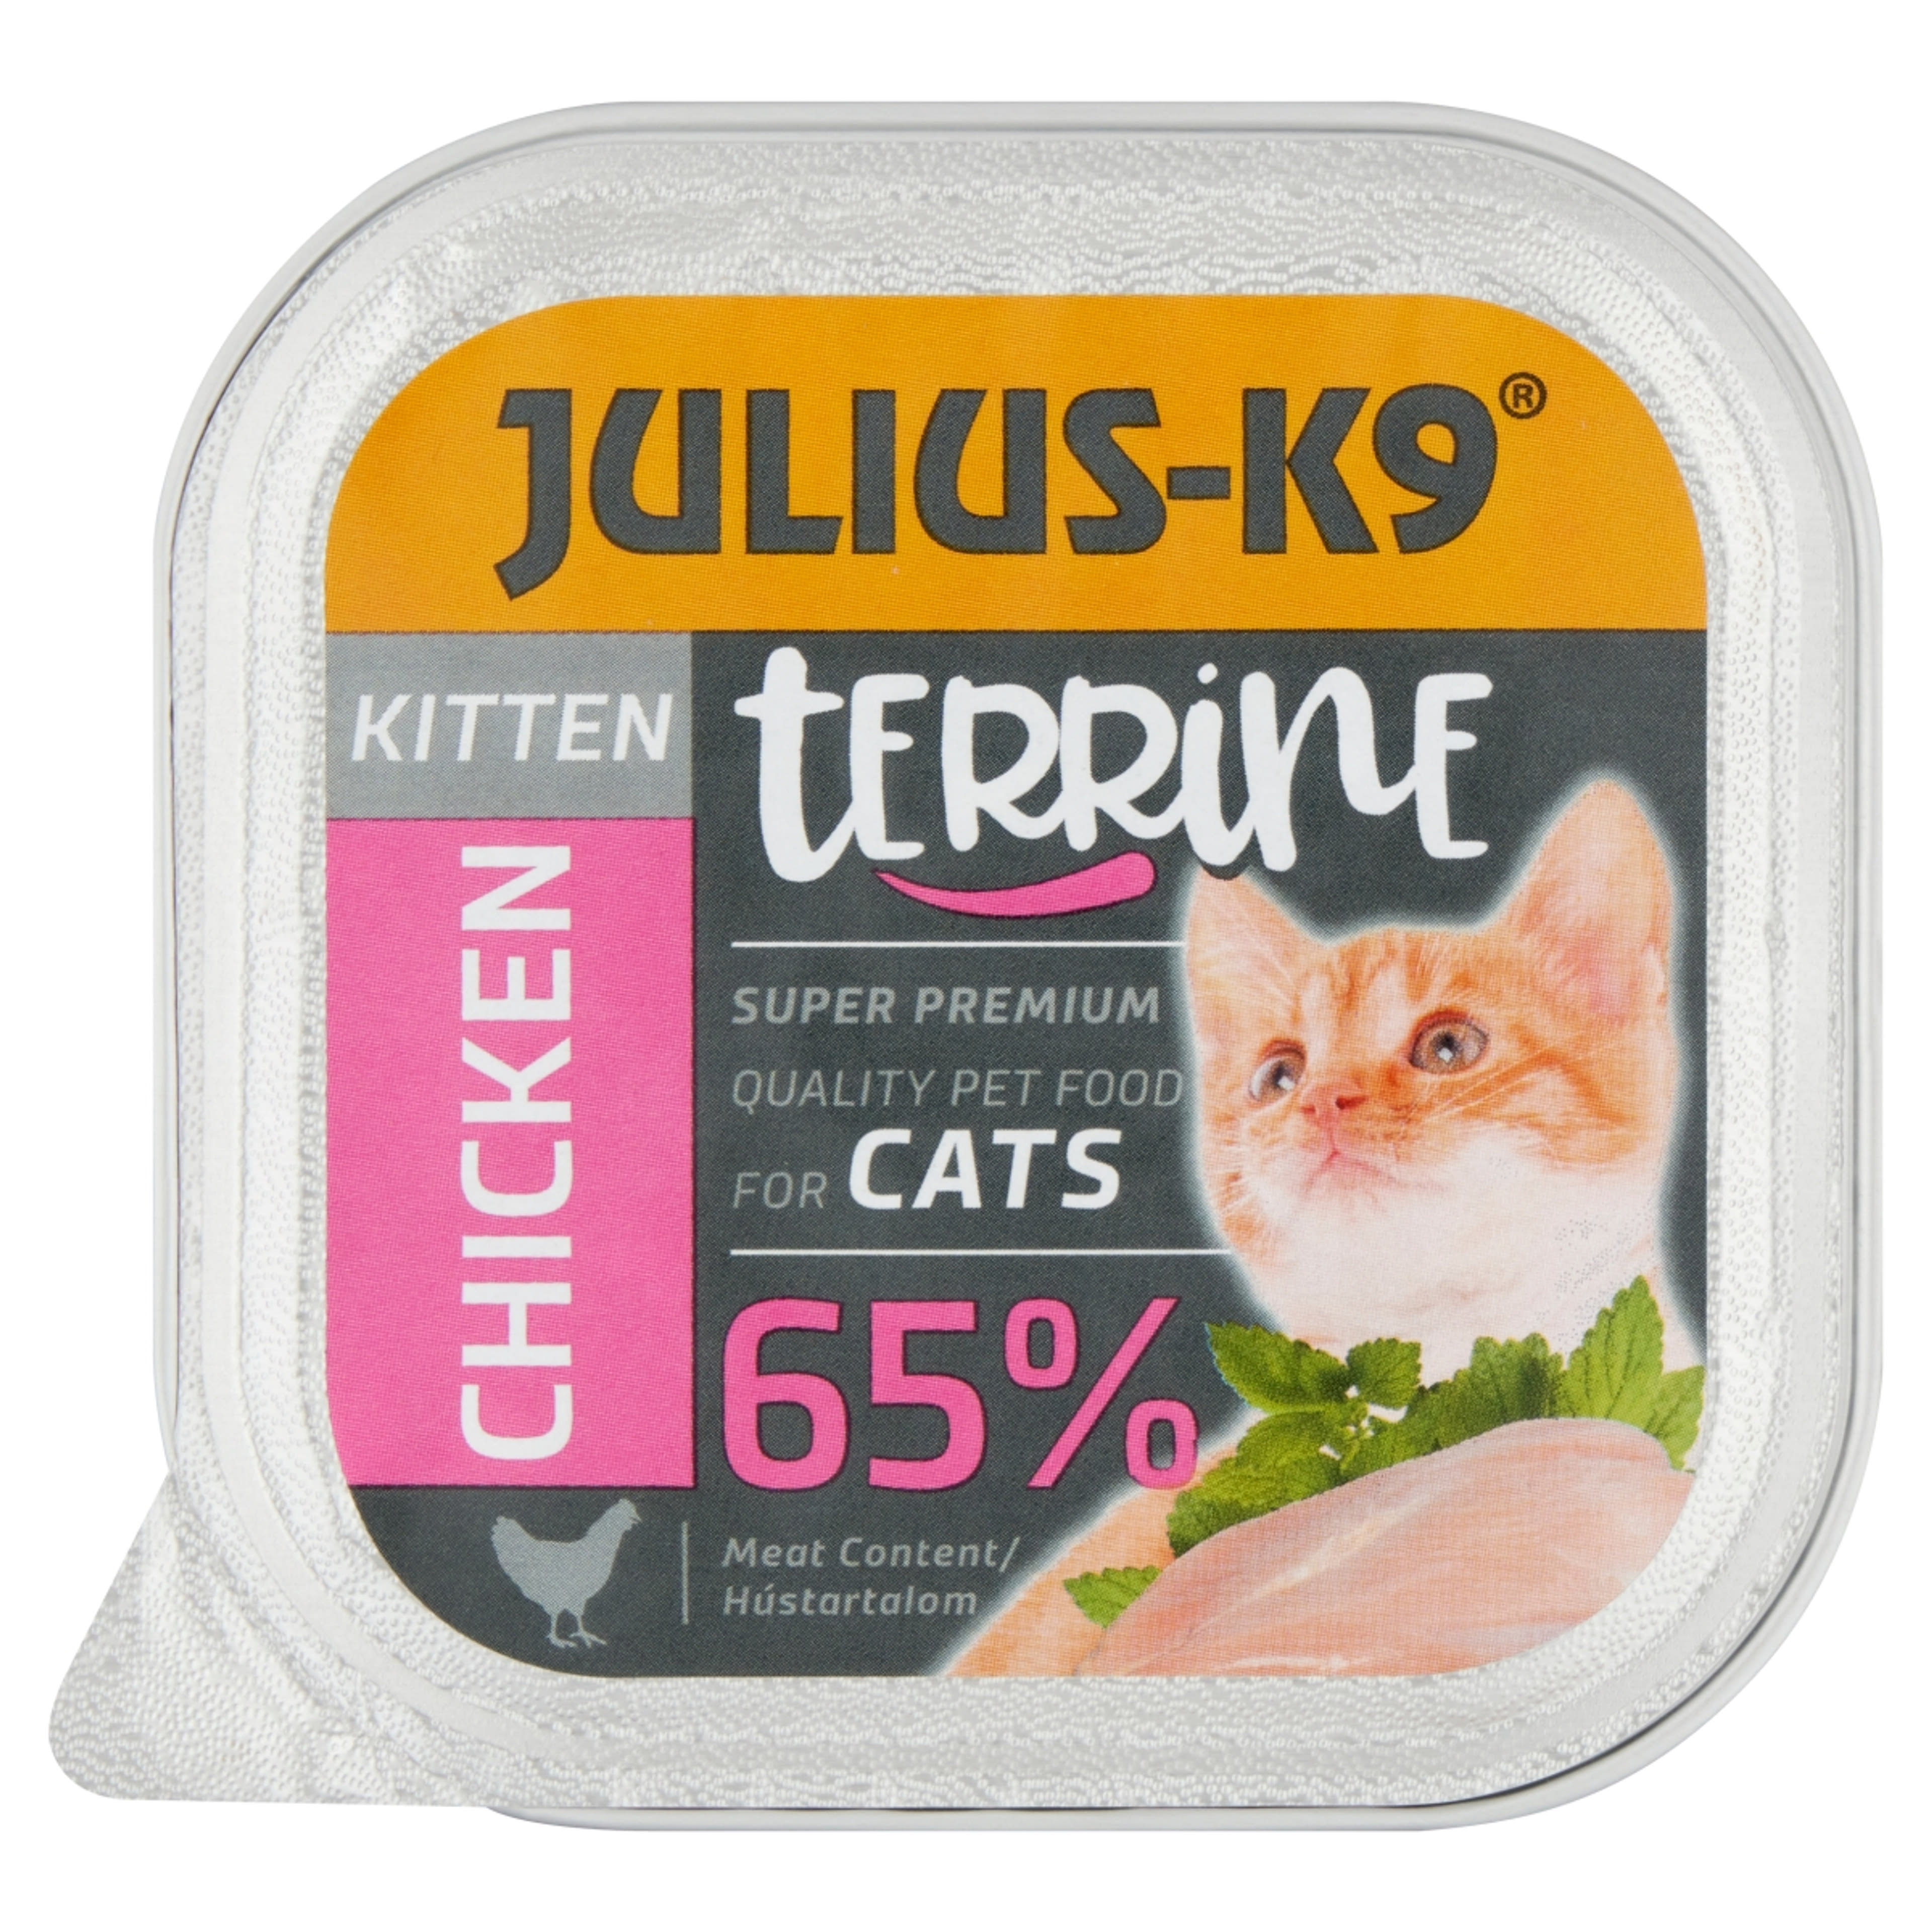 Julius-K9 alutál macskáknak, kitten csirke - 100 g-1